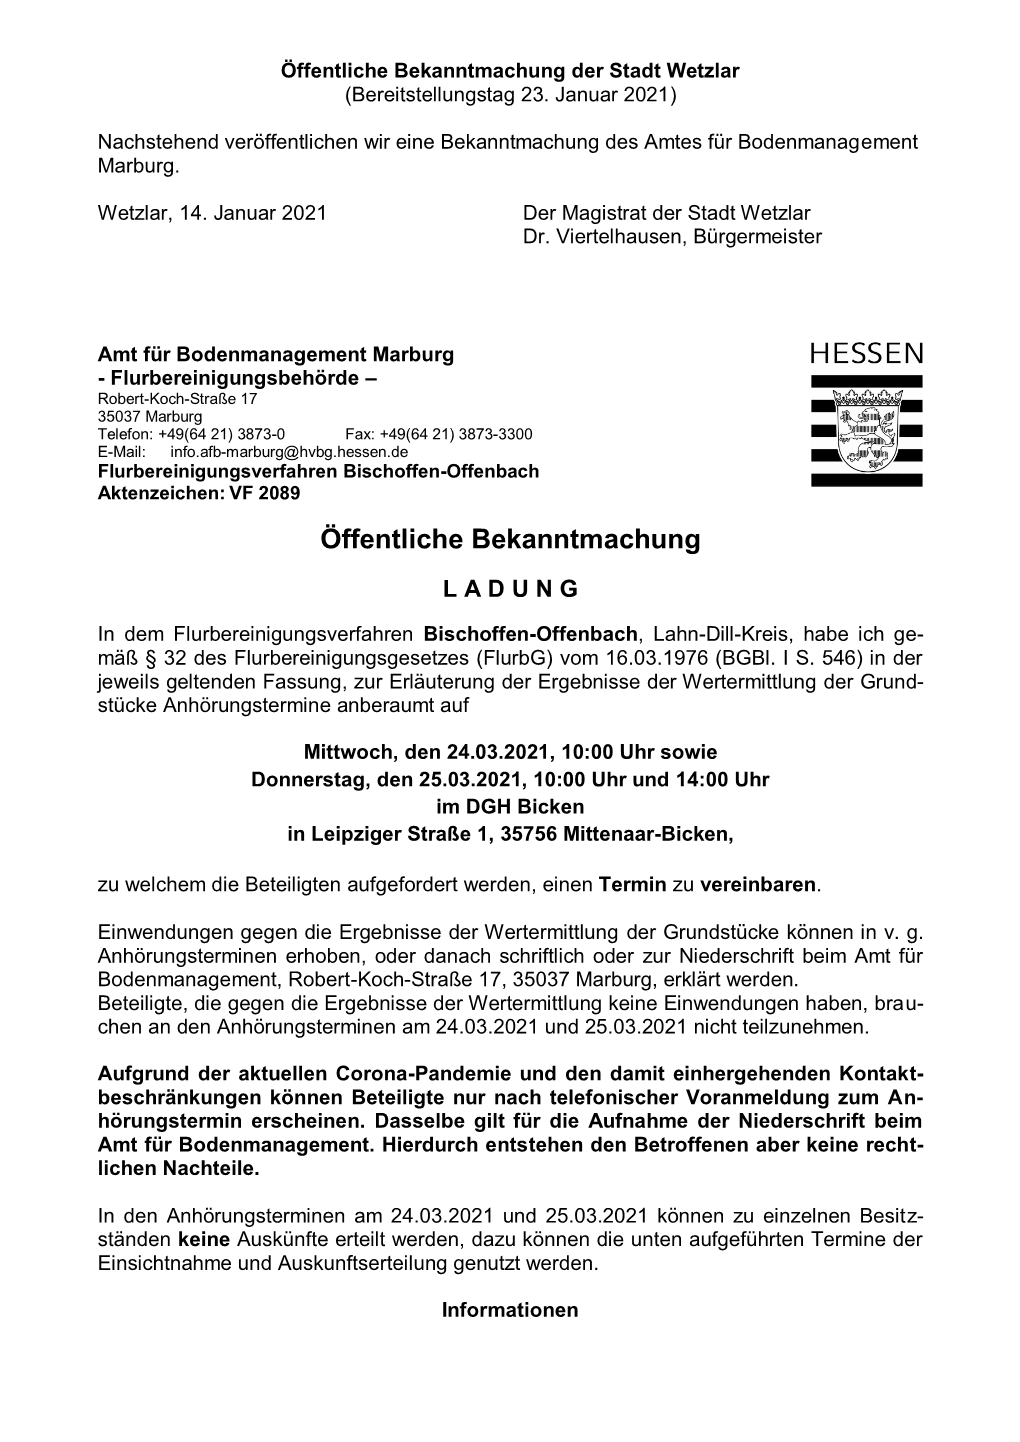 Öffentliche Bekanntmachung Der Stadt Wetzlar (Bereitstellungstag 23